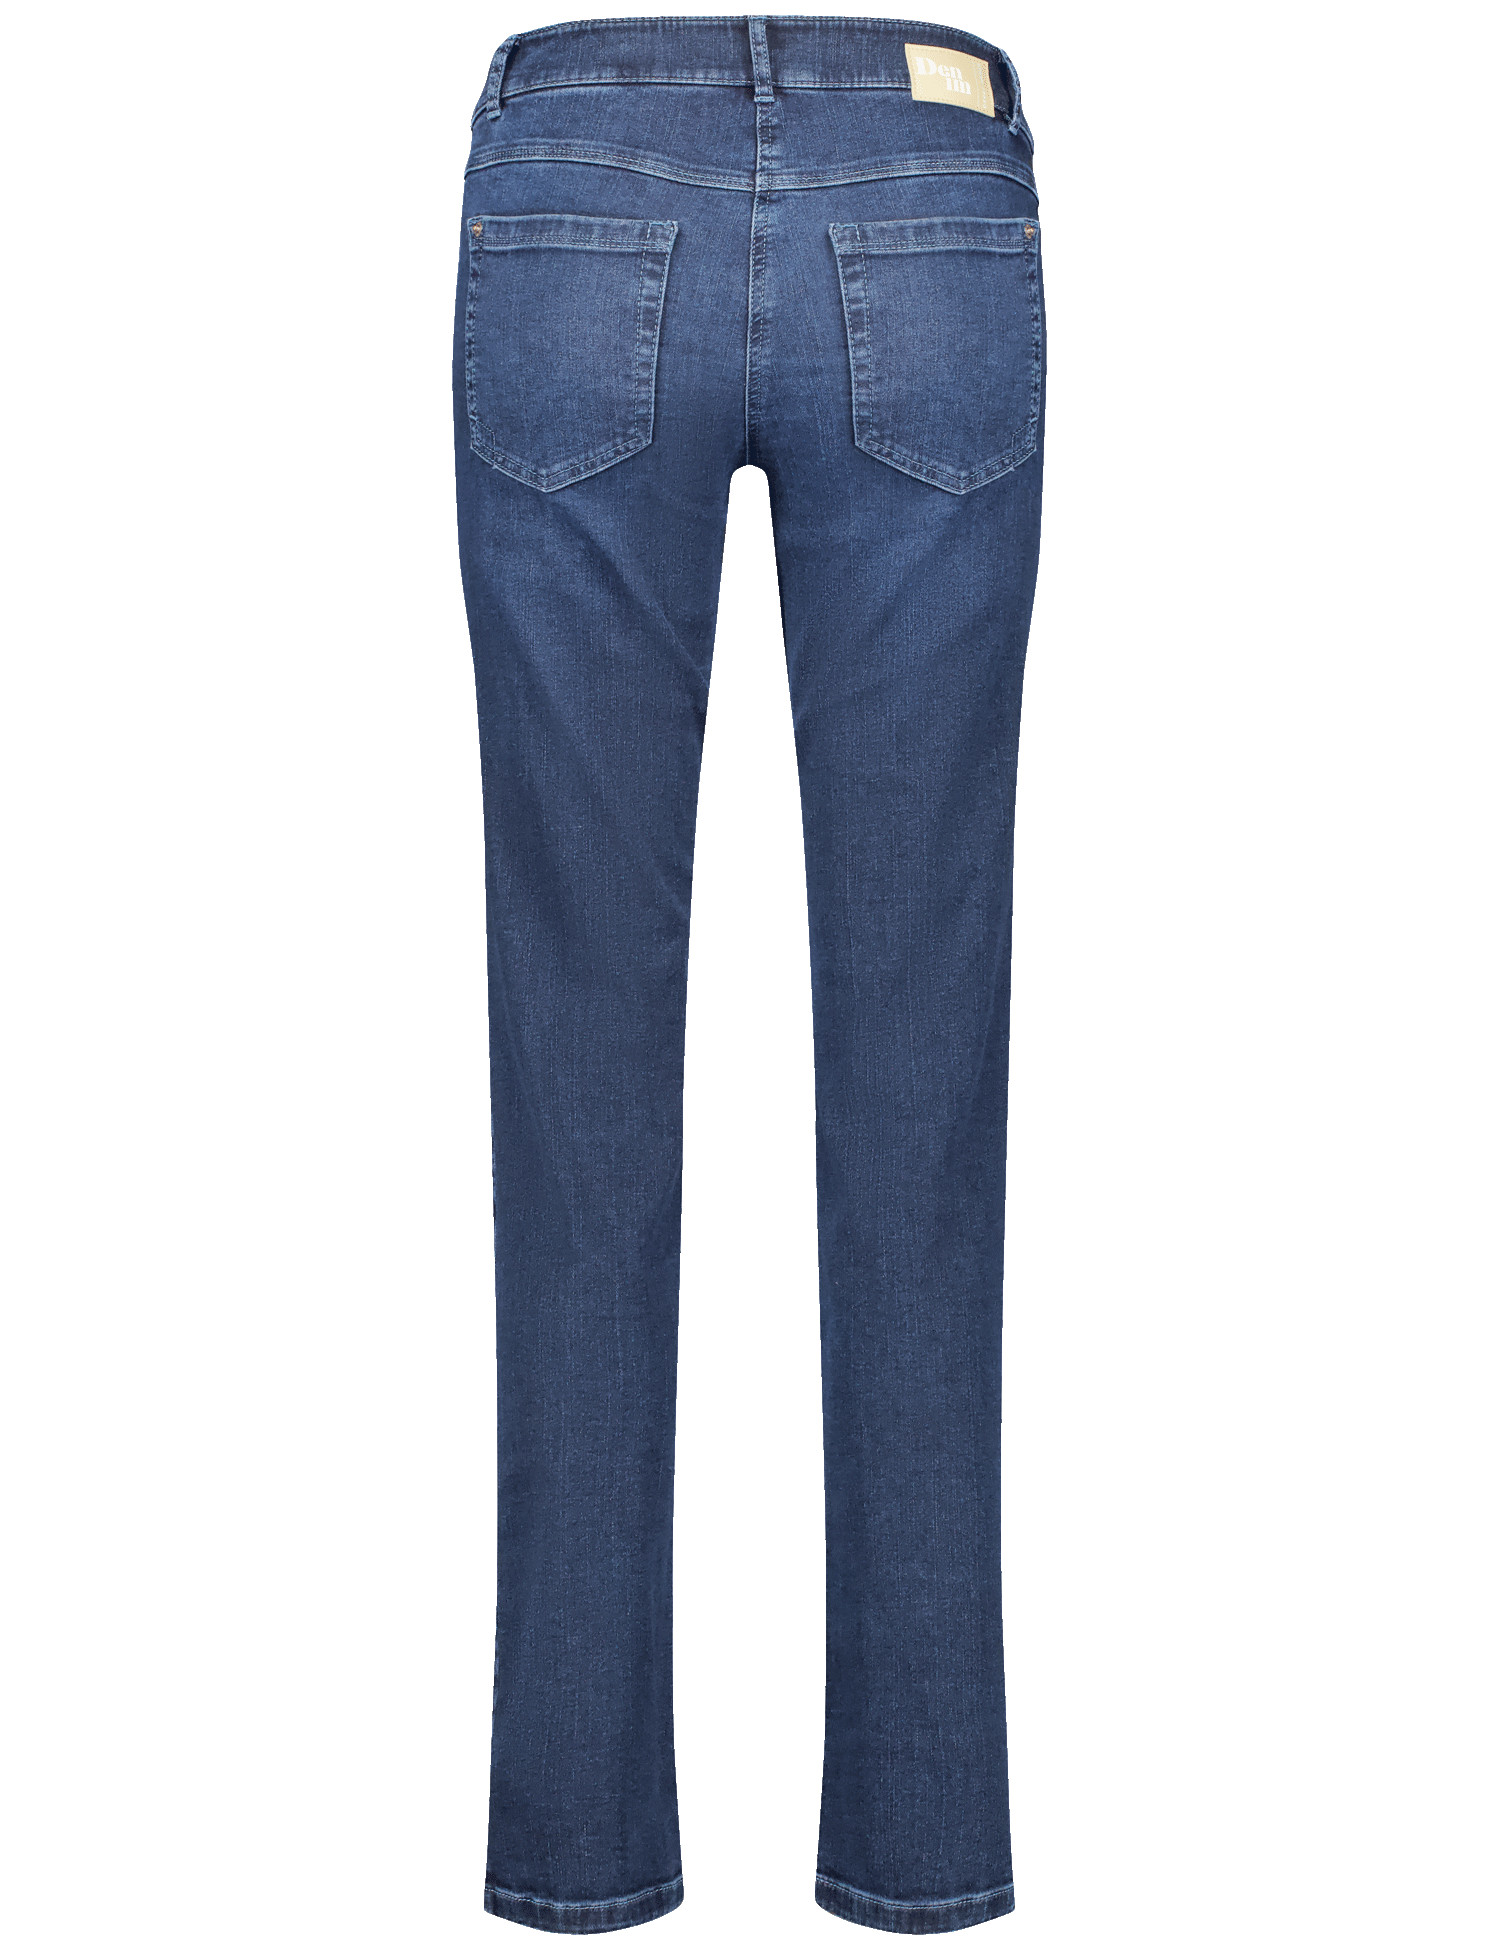 Damen-Jeans mit leicht ausgestelltem Bein aus Baumwoll-Mix